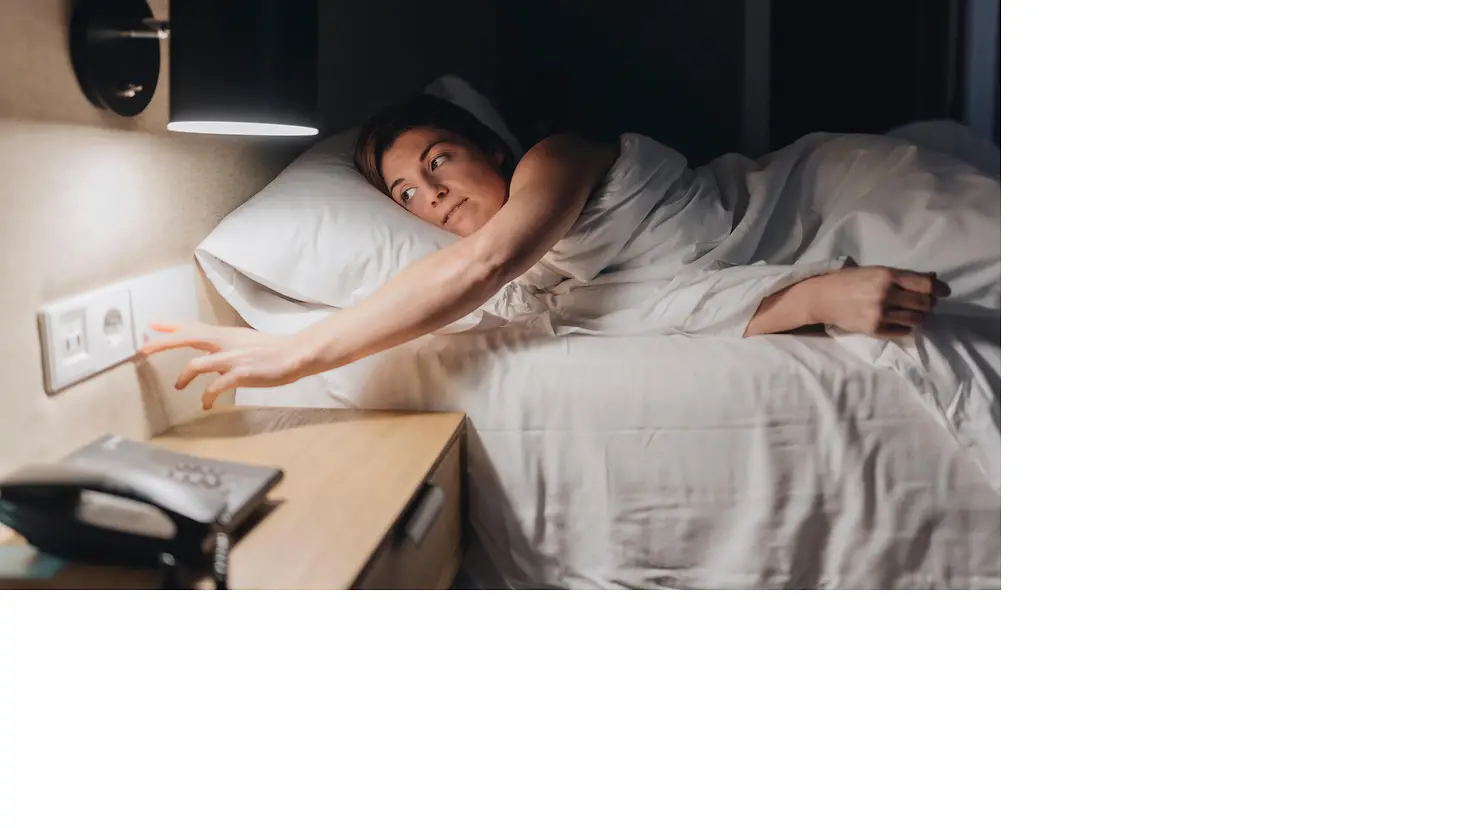 Eine junge Frau liegt im Bett und schaltet das Licht aus